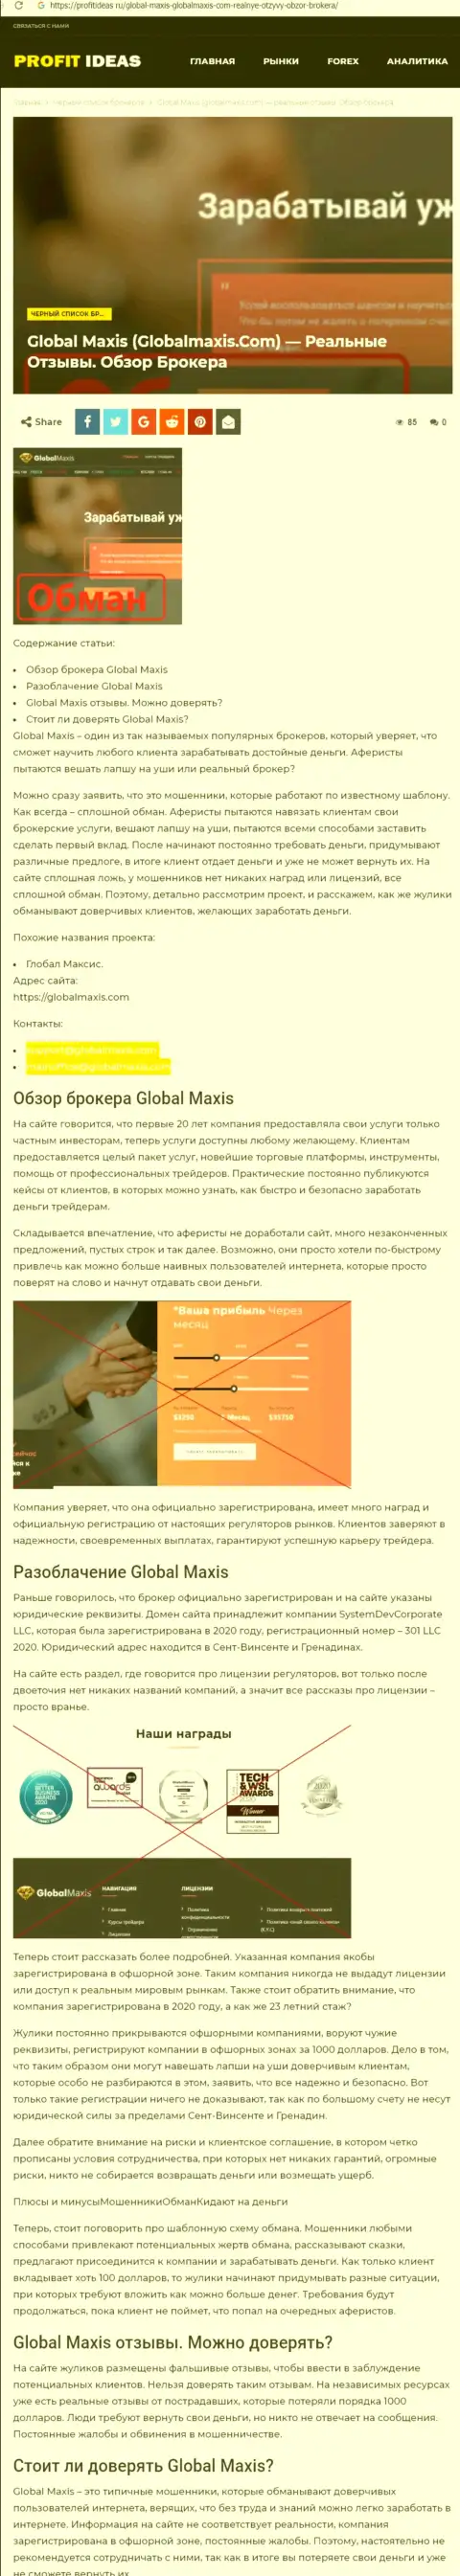 GlobalMaxis Com - это мошенники, которых нужно обходить десятой дорогой (обзор противозаконных действий)